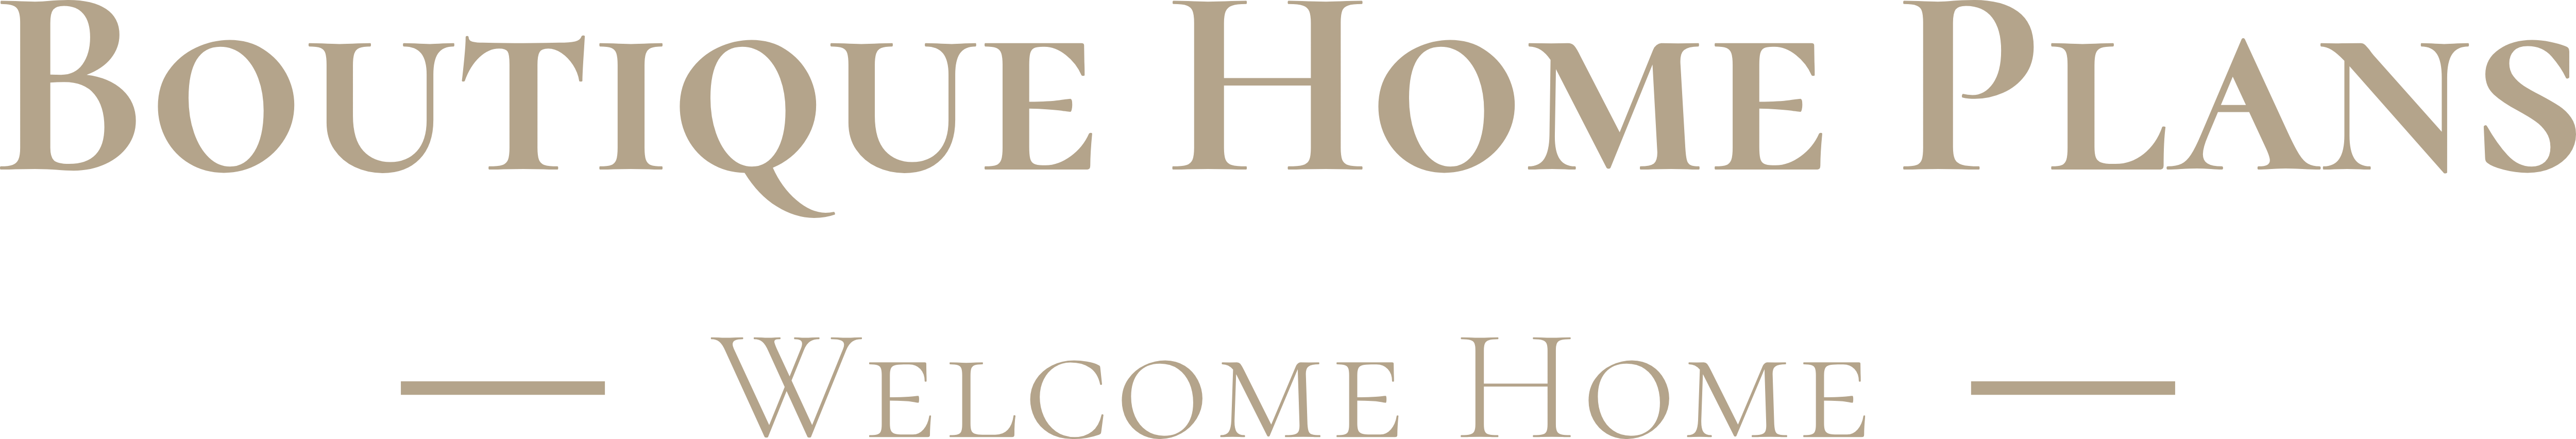 Boutique Home Plans Logo